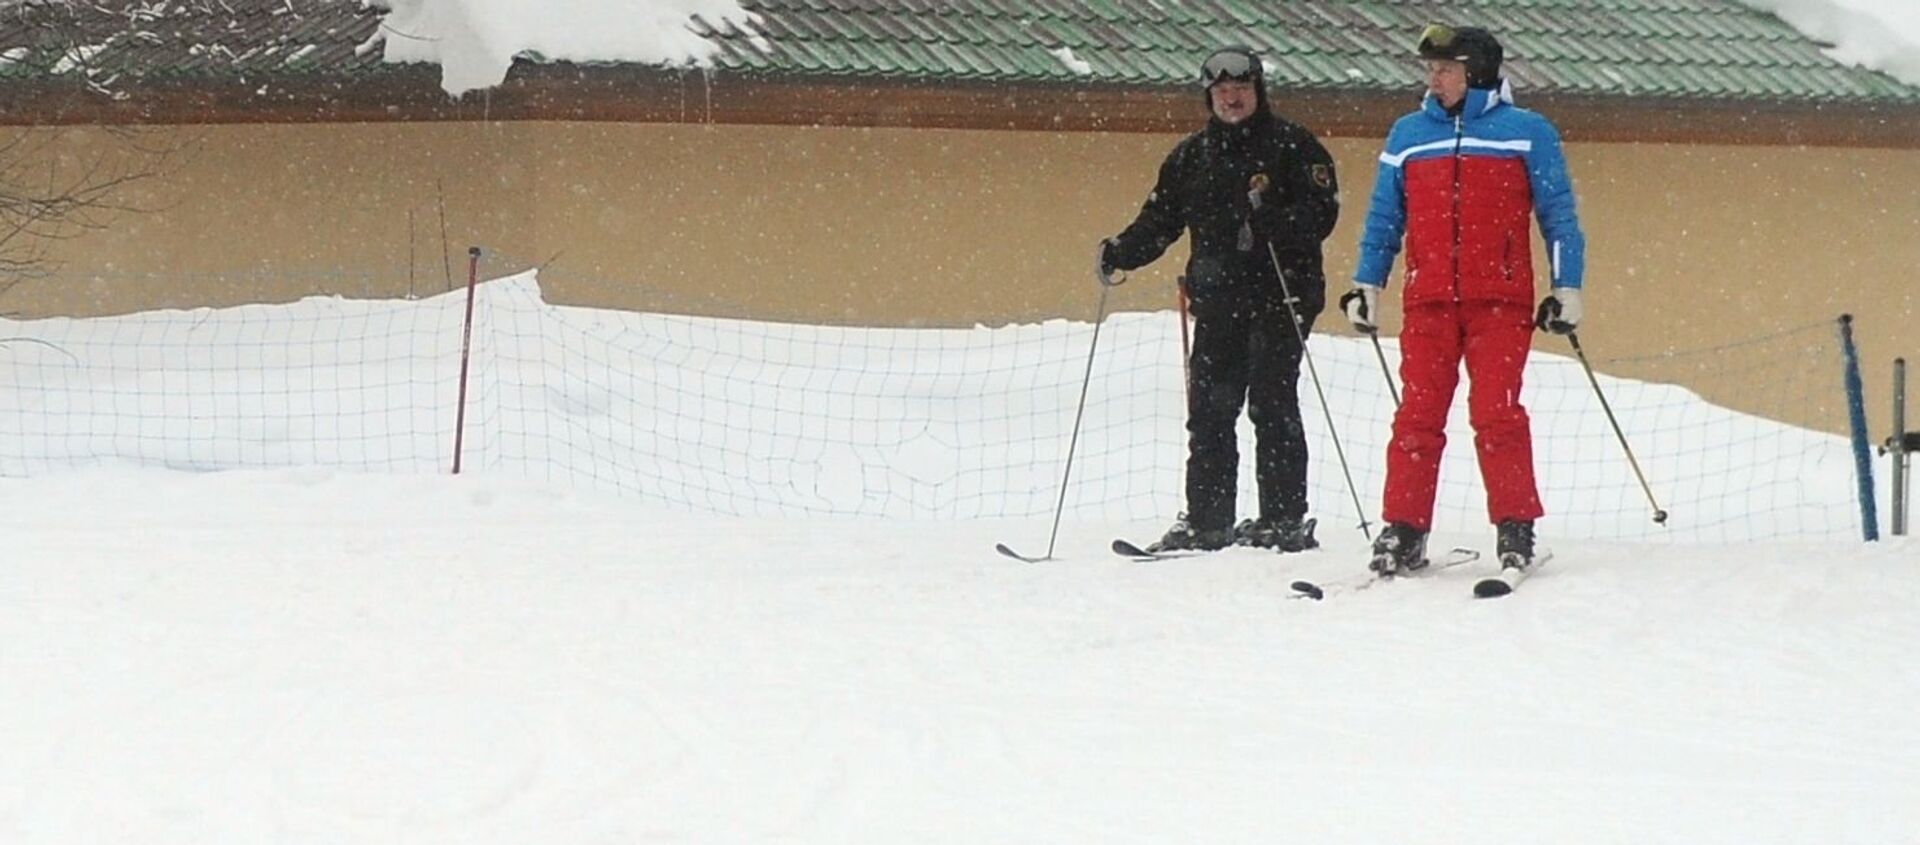 Владимир Путин и Александр Лукашенко во время катания на лыжах - Sputnik Беларусь, 1920, 22.02.2021